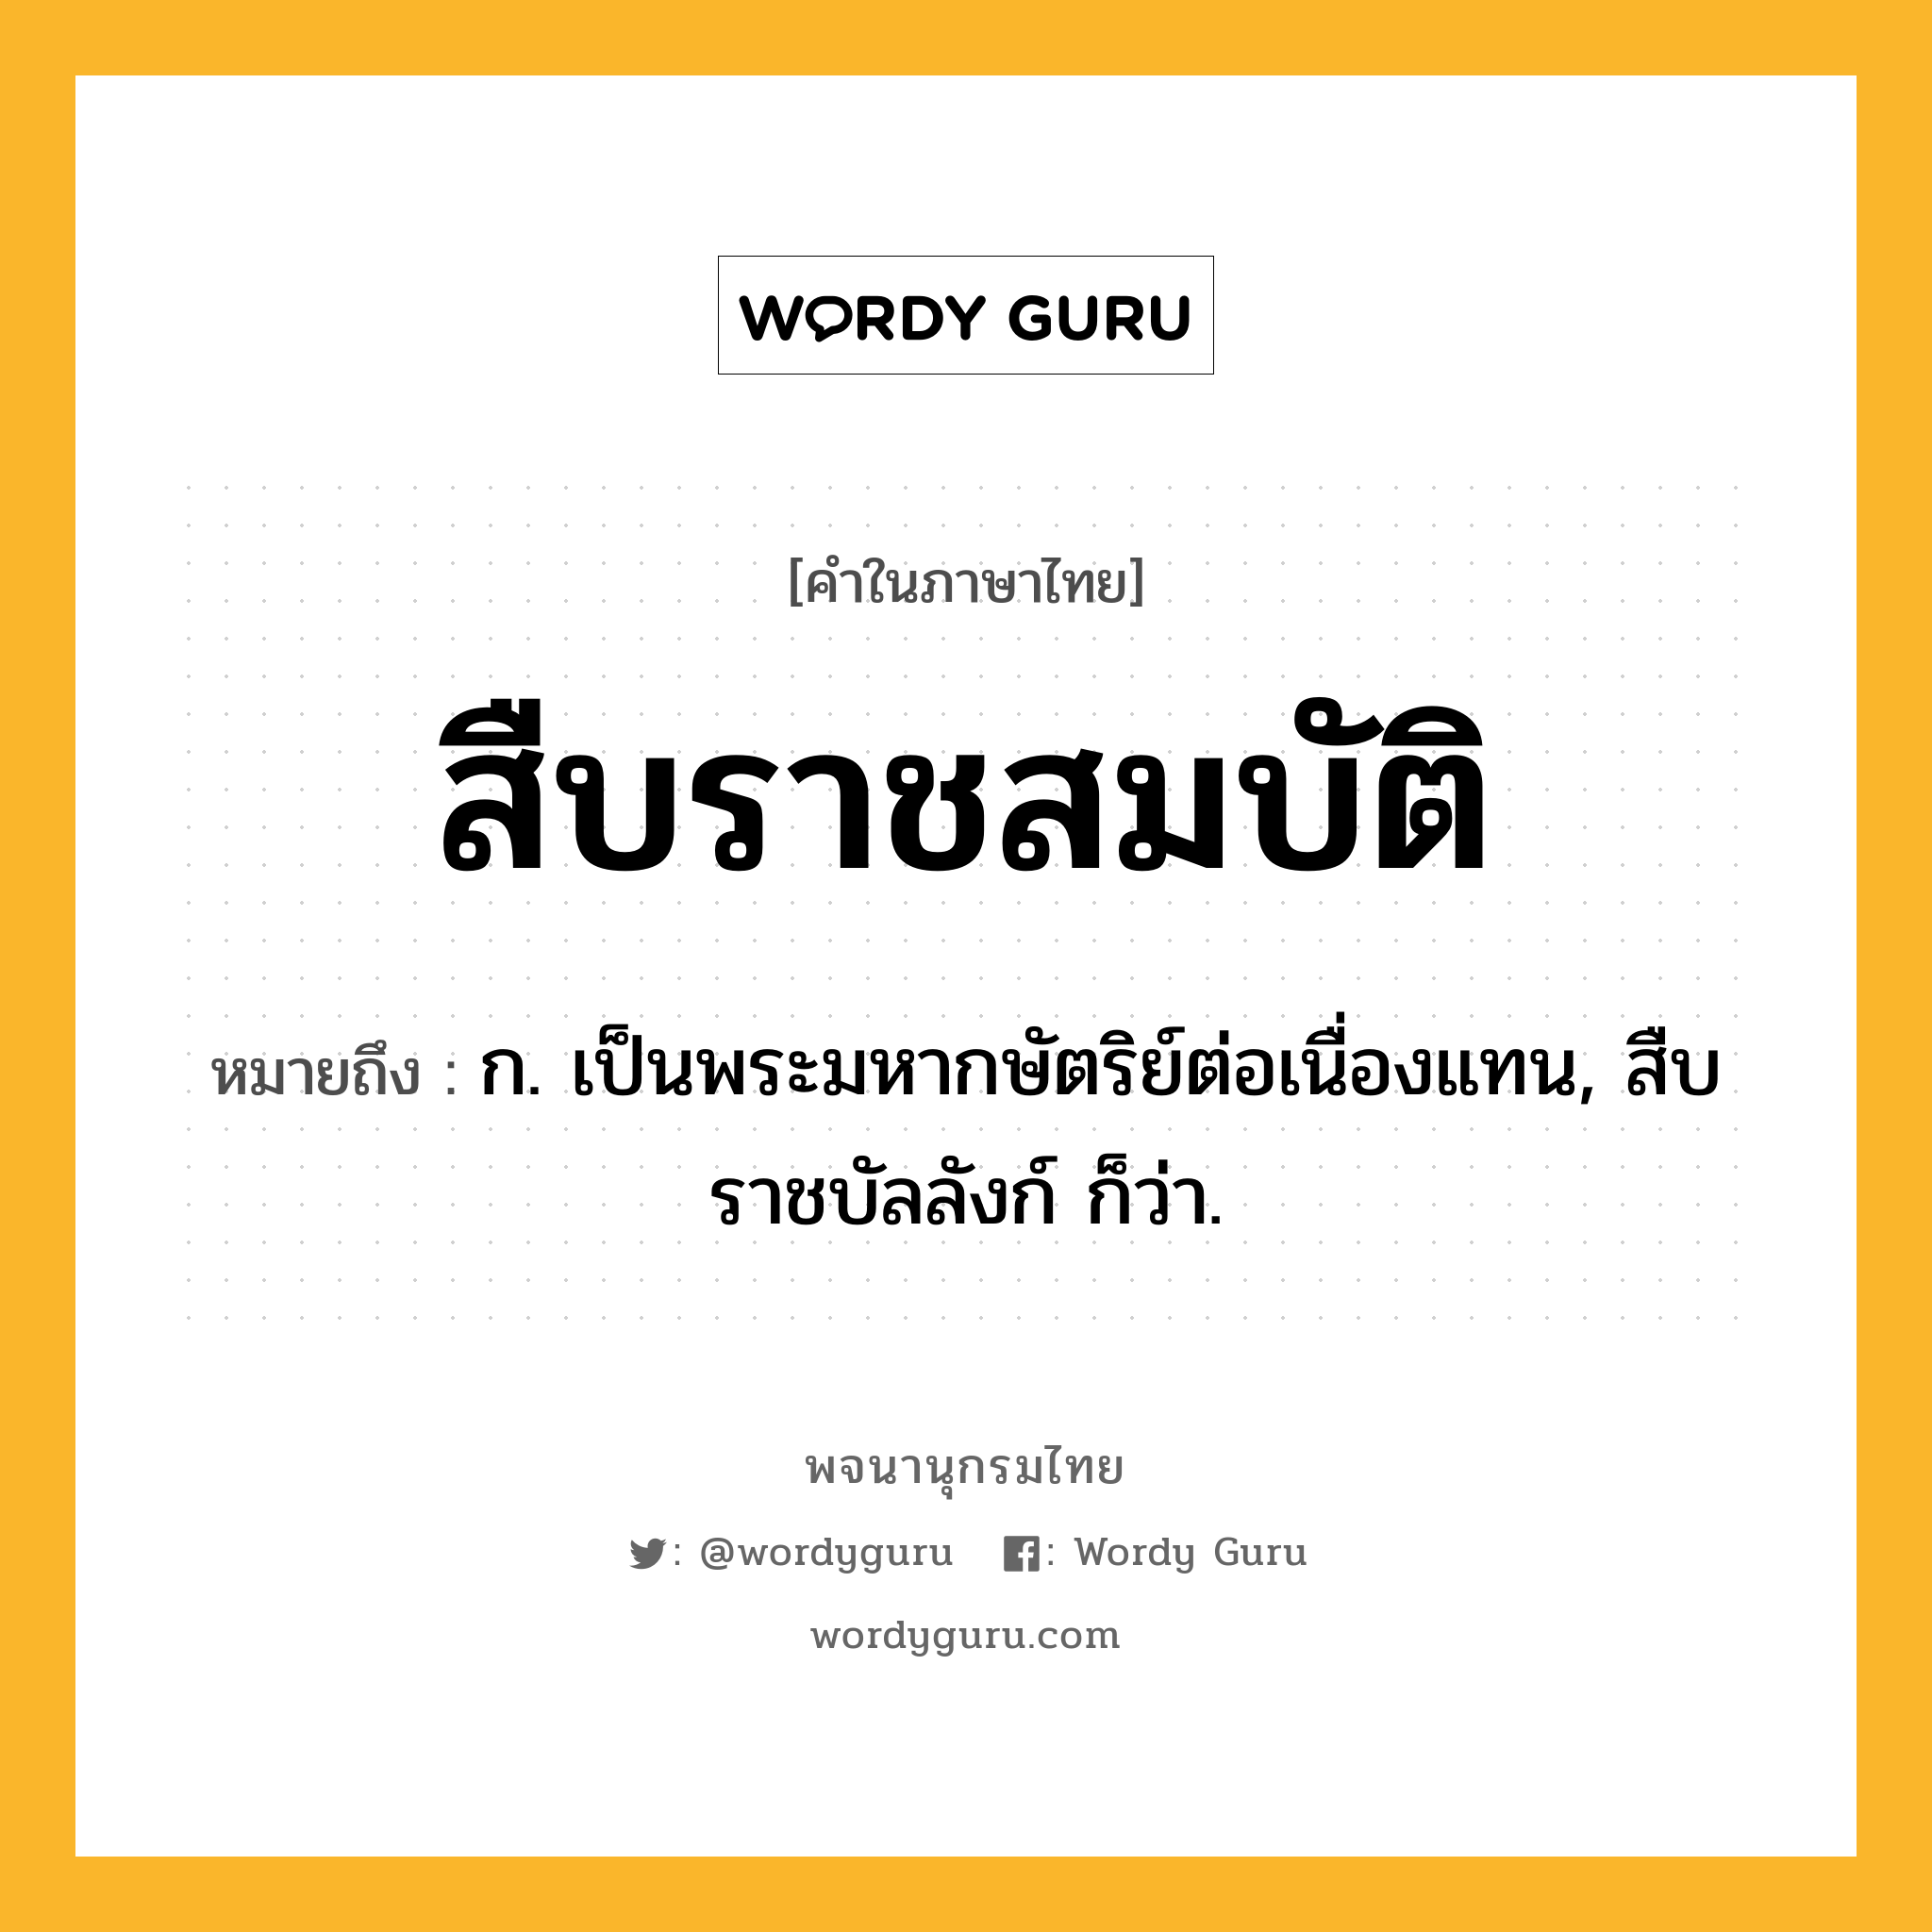 สืบราชสมบัติ ความหมาย หมายถึงอะไร?, คำในภาษาไทย สืบราชสมบัติ หมายถึง ก. เป็นพระมหากษัตริย์ต่อเนื่องแทน, สืบราชบัลลังก์ ก็ว่า.